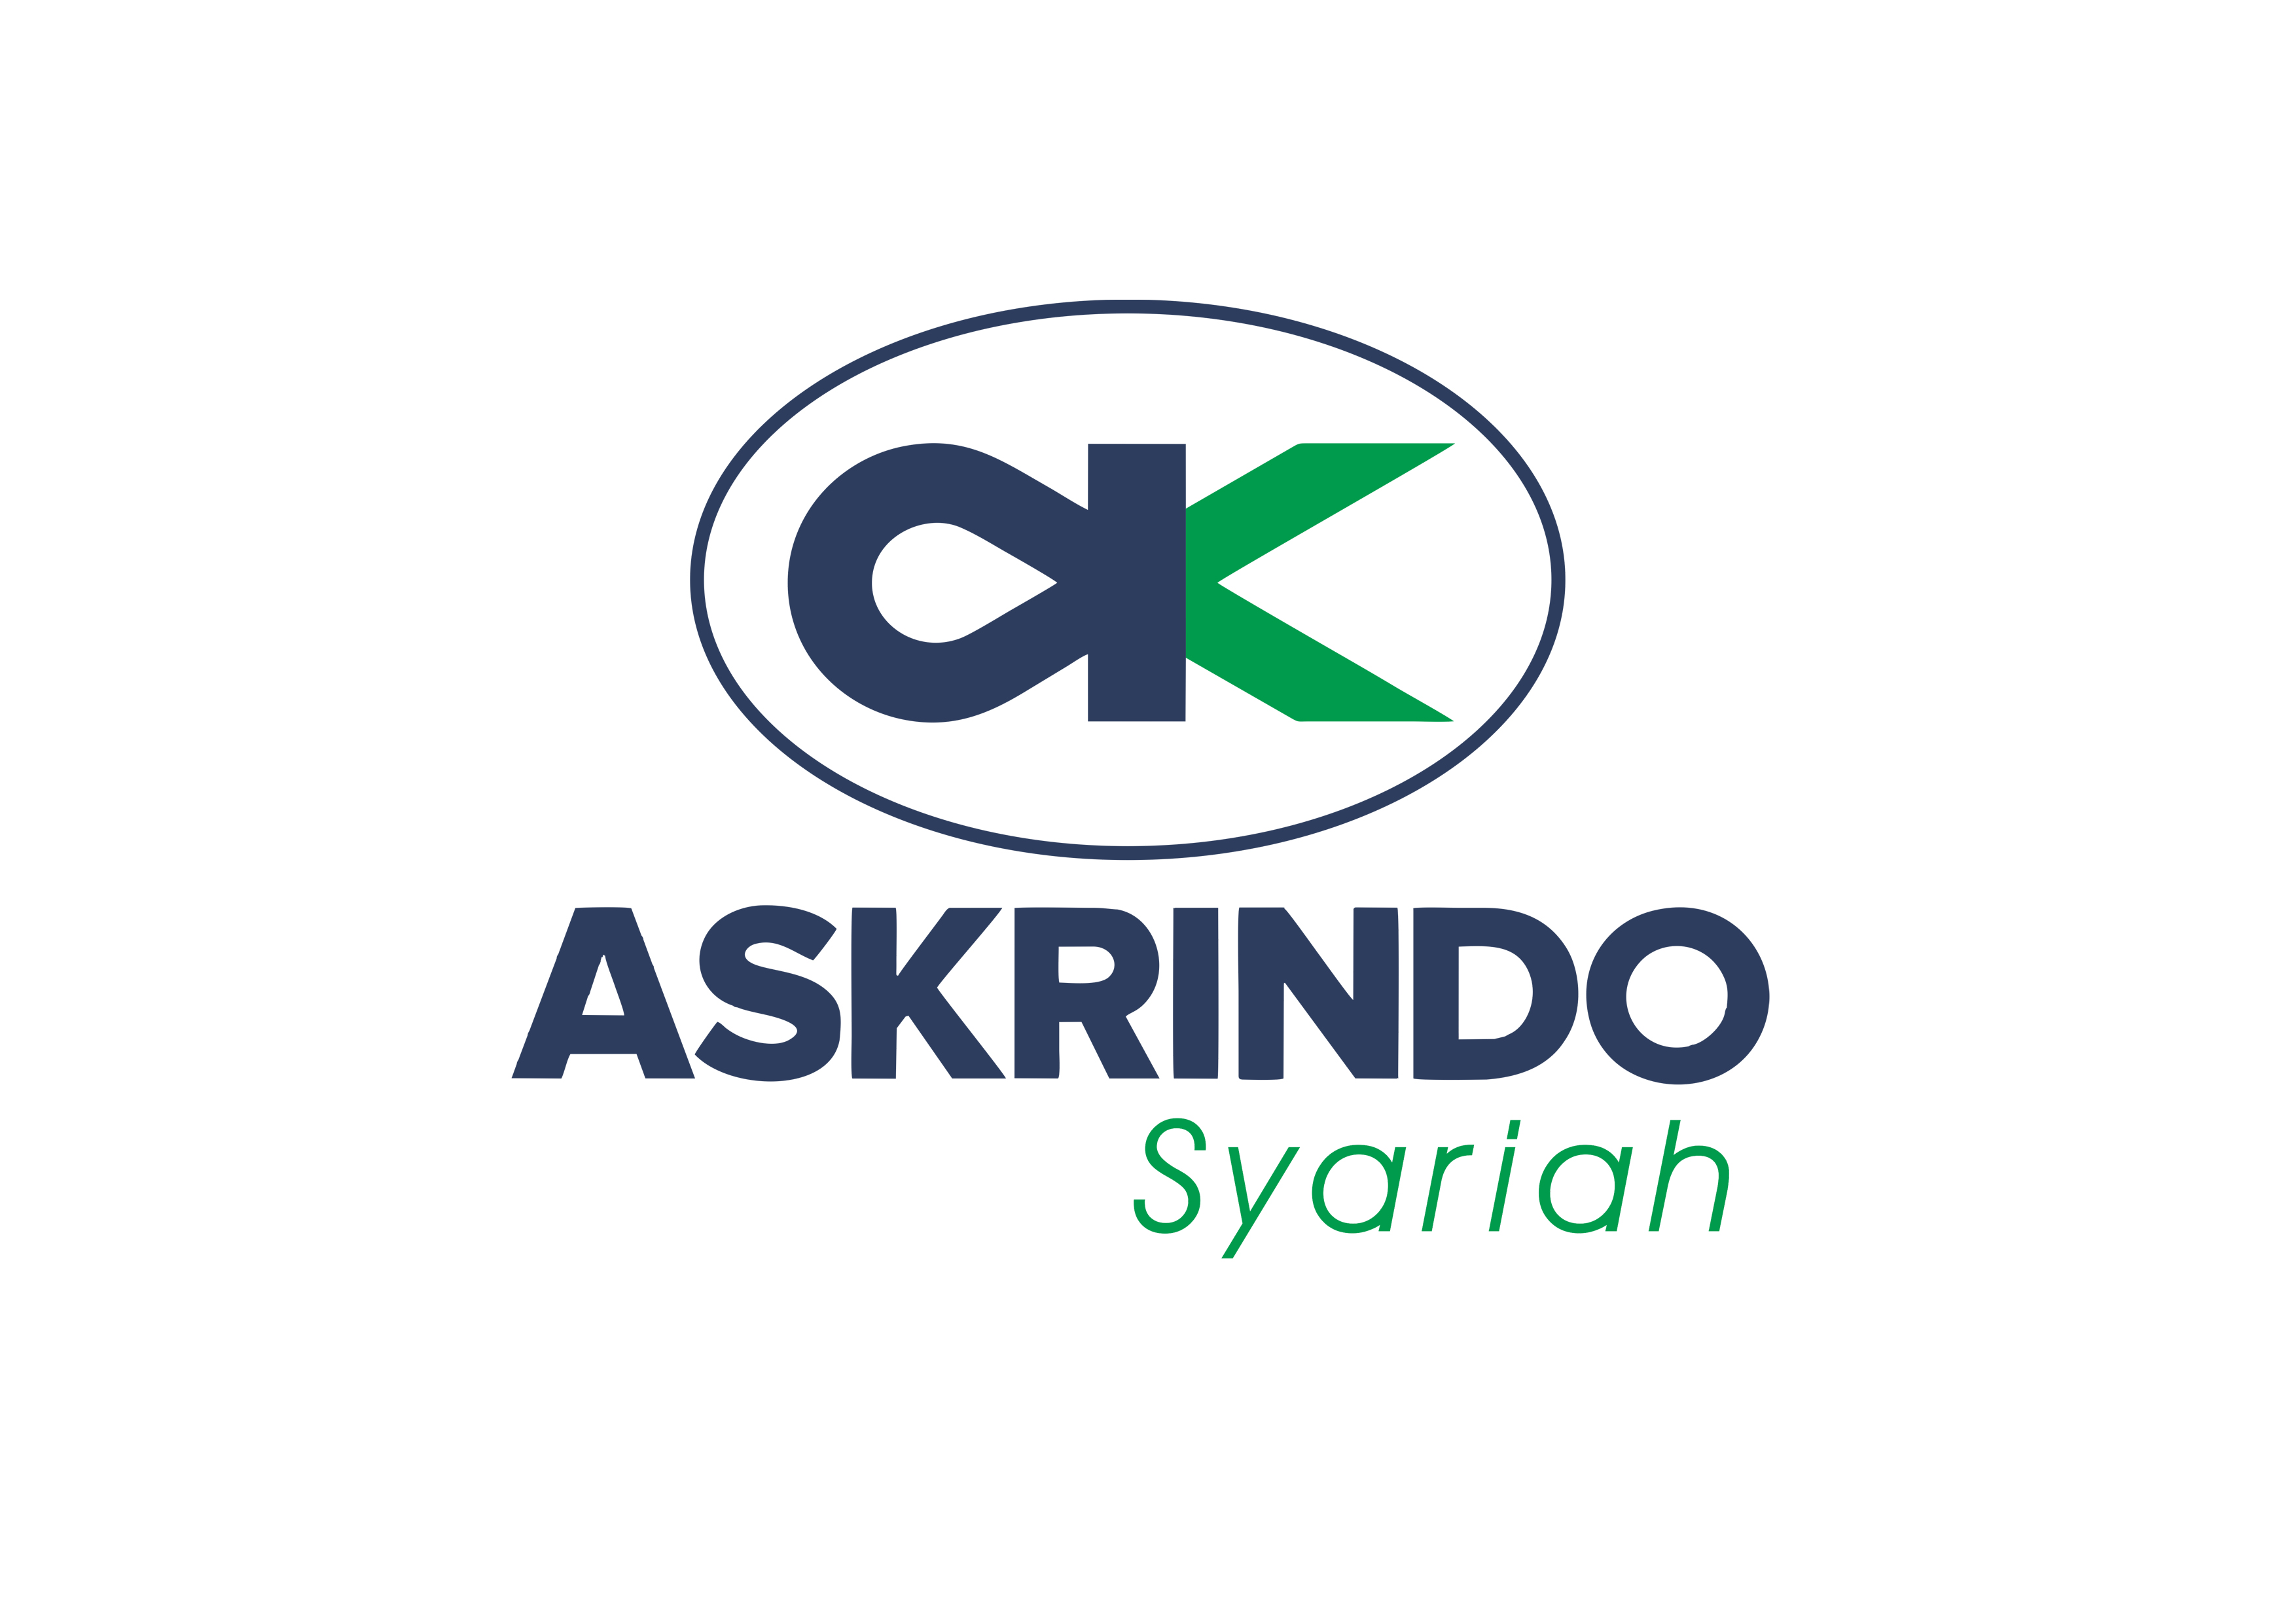 Employee Gathering Askrindo Syariah 2019 Part 2